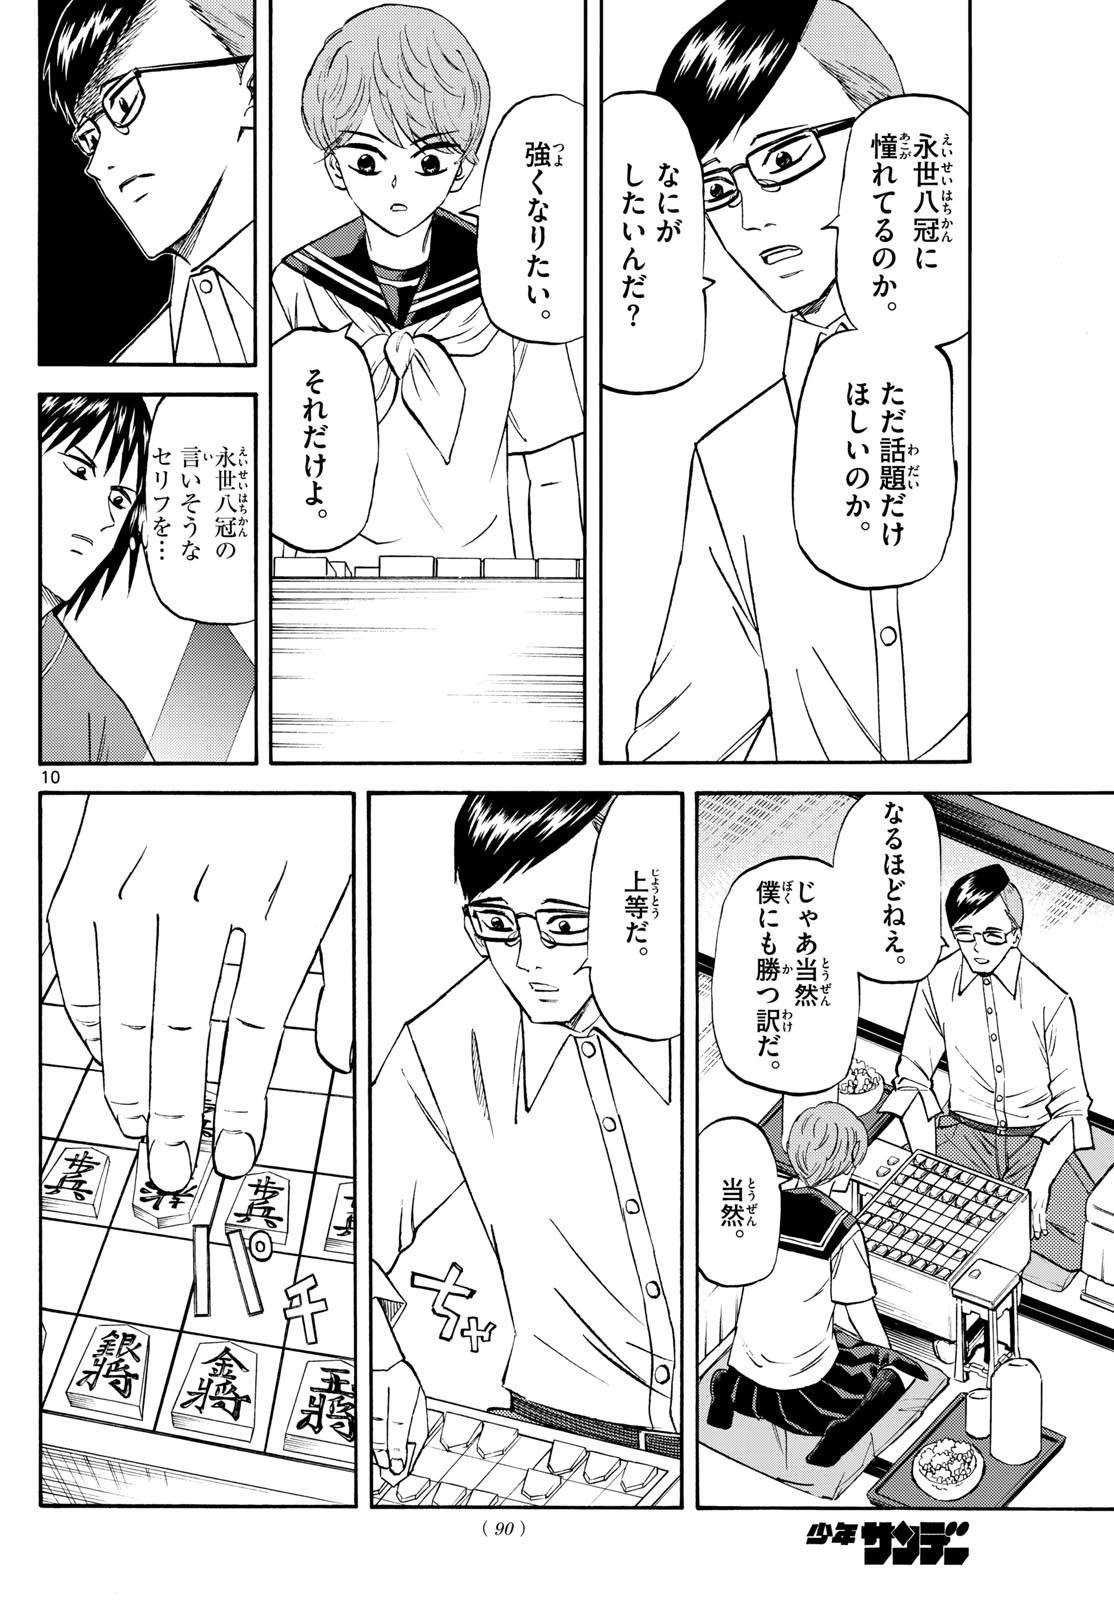 Ryu-to-Ichigo - Chapter 196 - Page 10